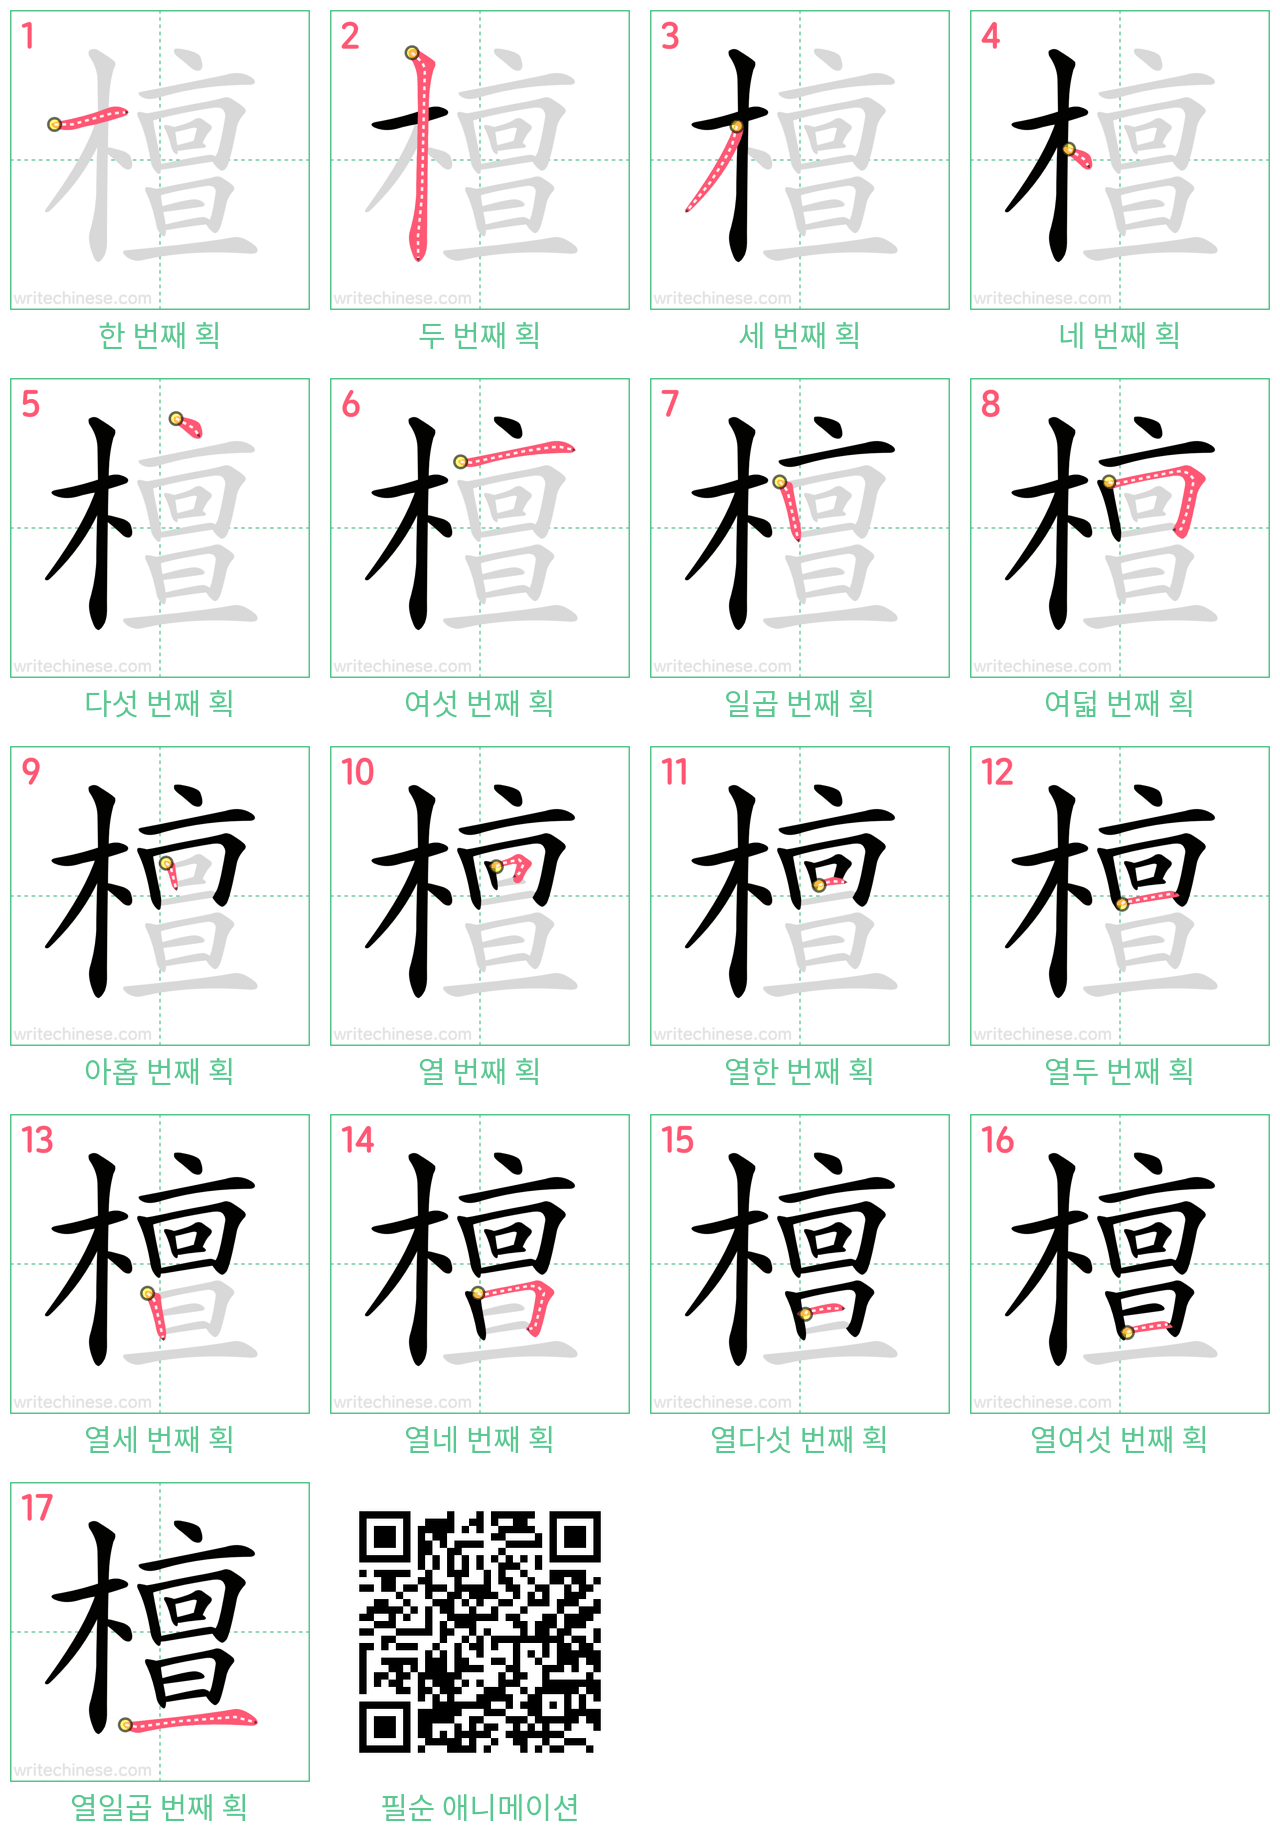 檀 step-by-step stroke order diagrams